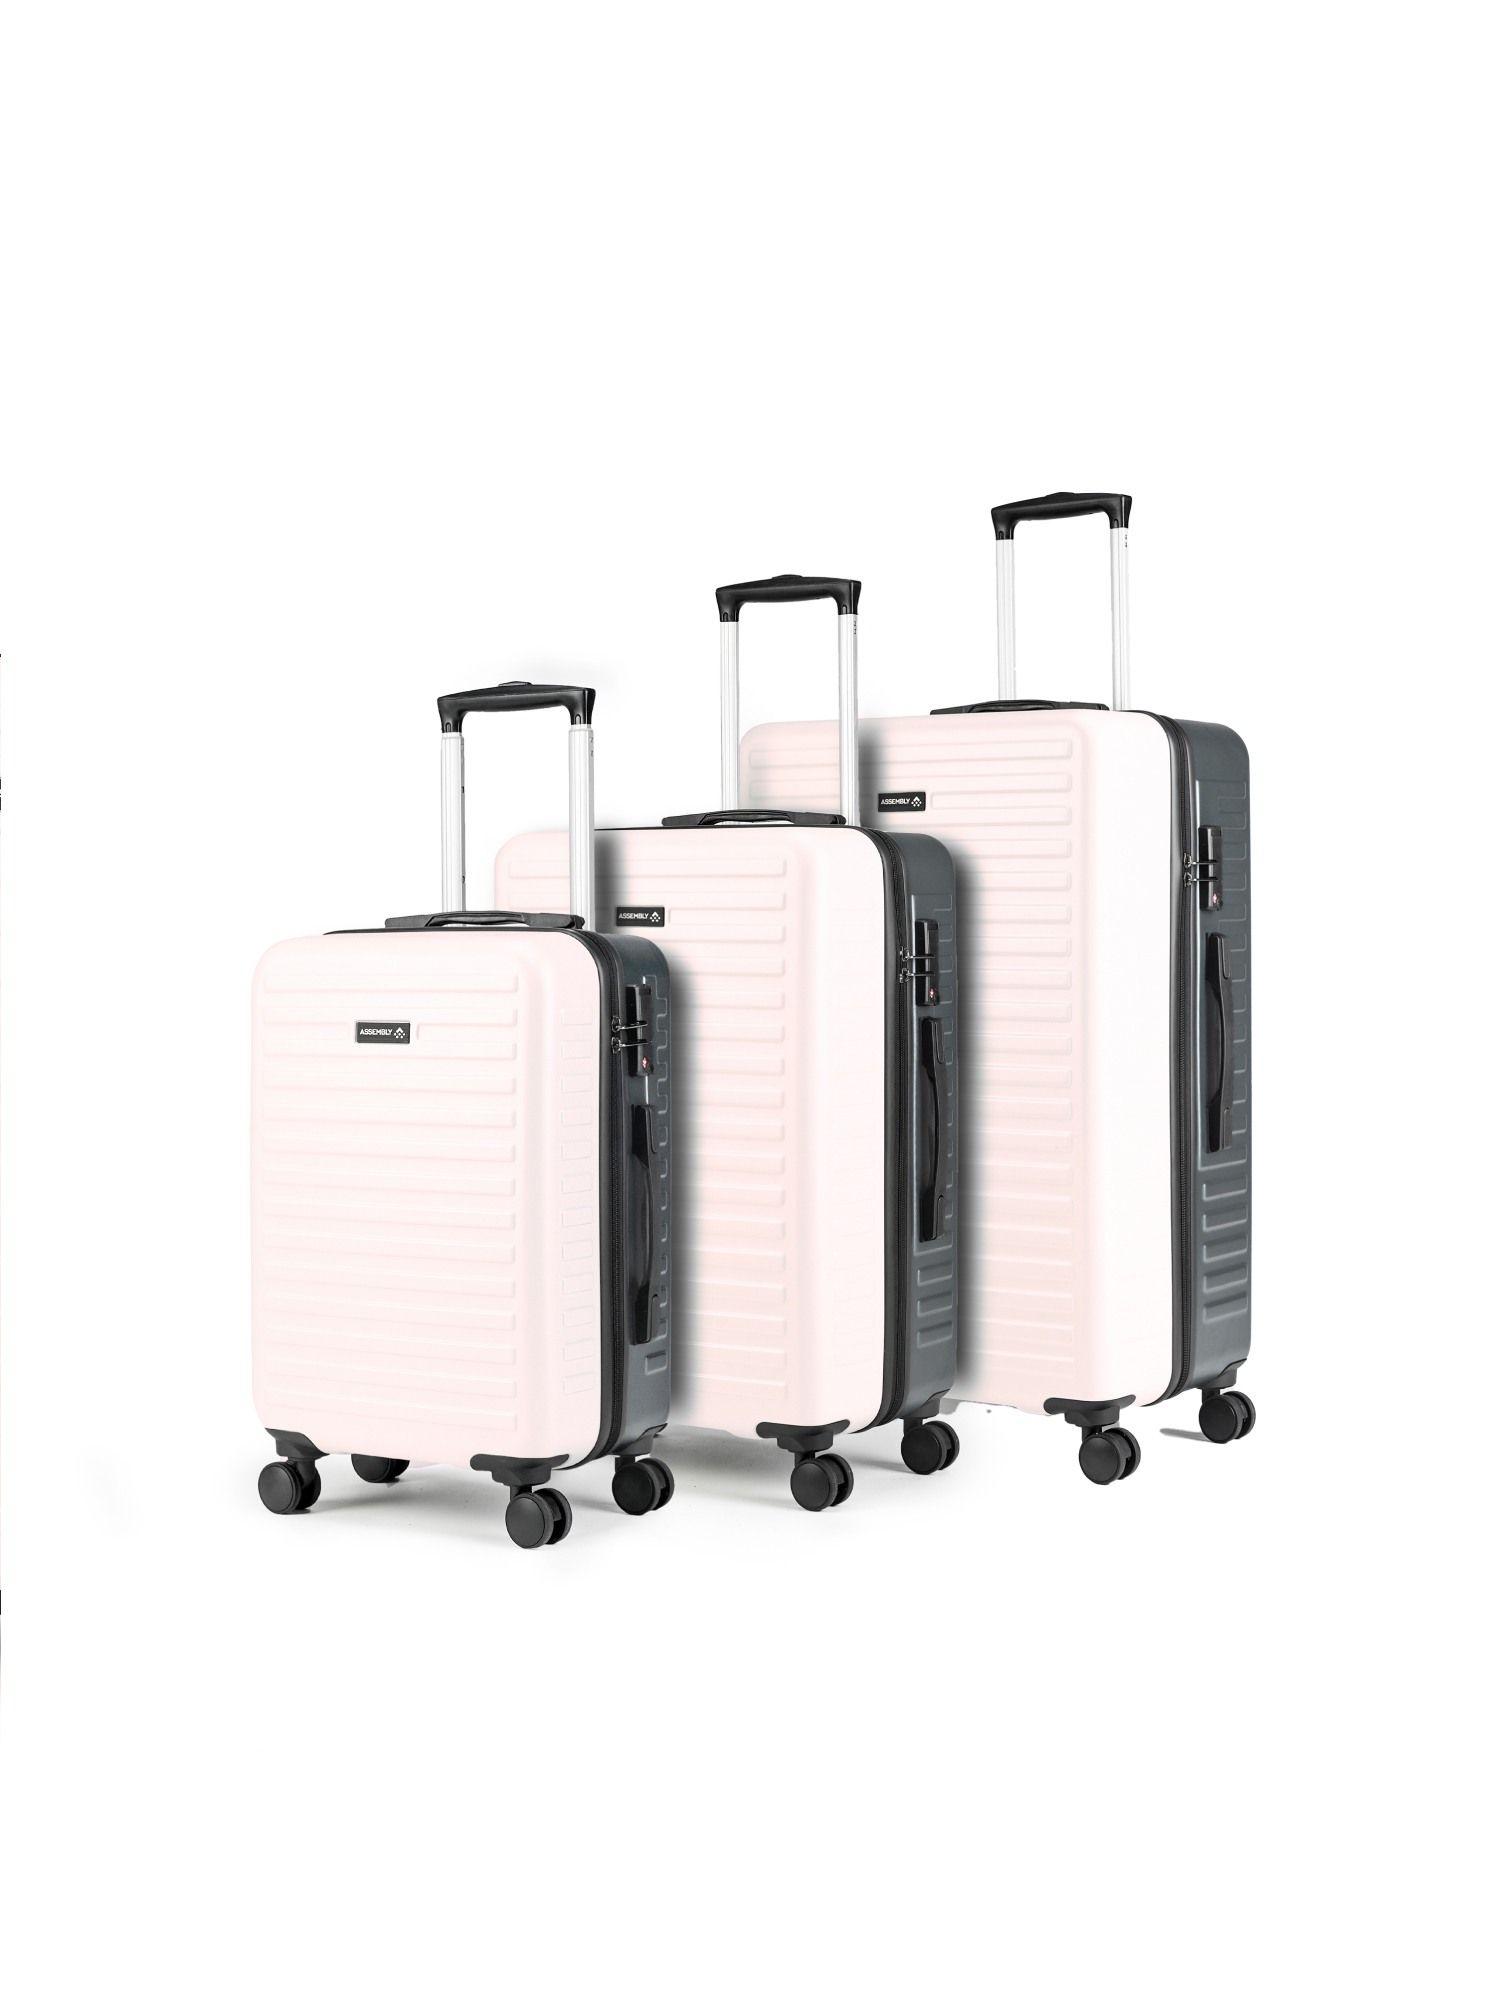 set of 3 luggage trolley - 74 cm, 61 cm & 54 cm dual tone - ivory & grey